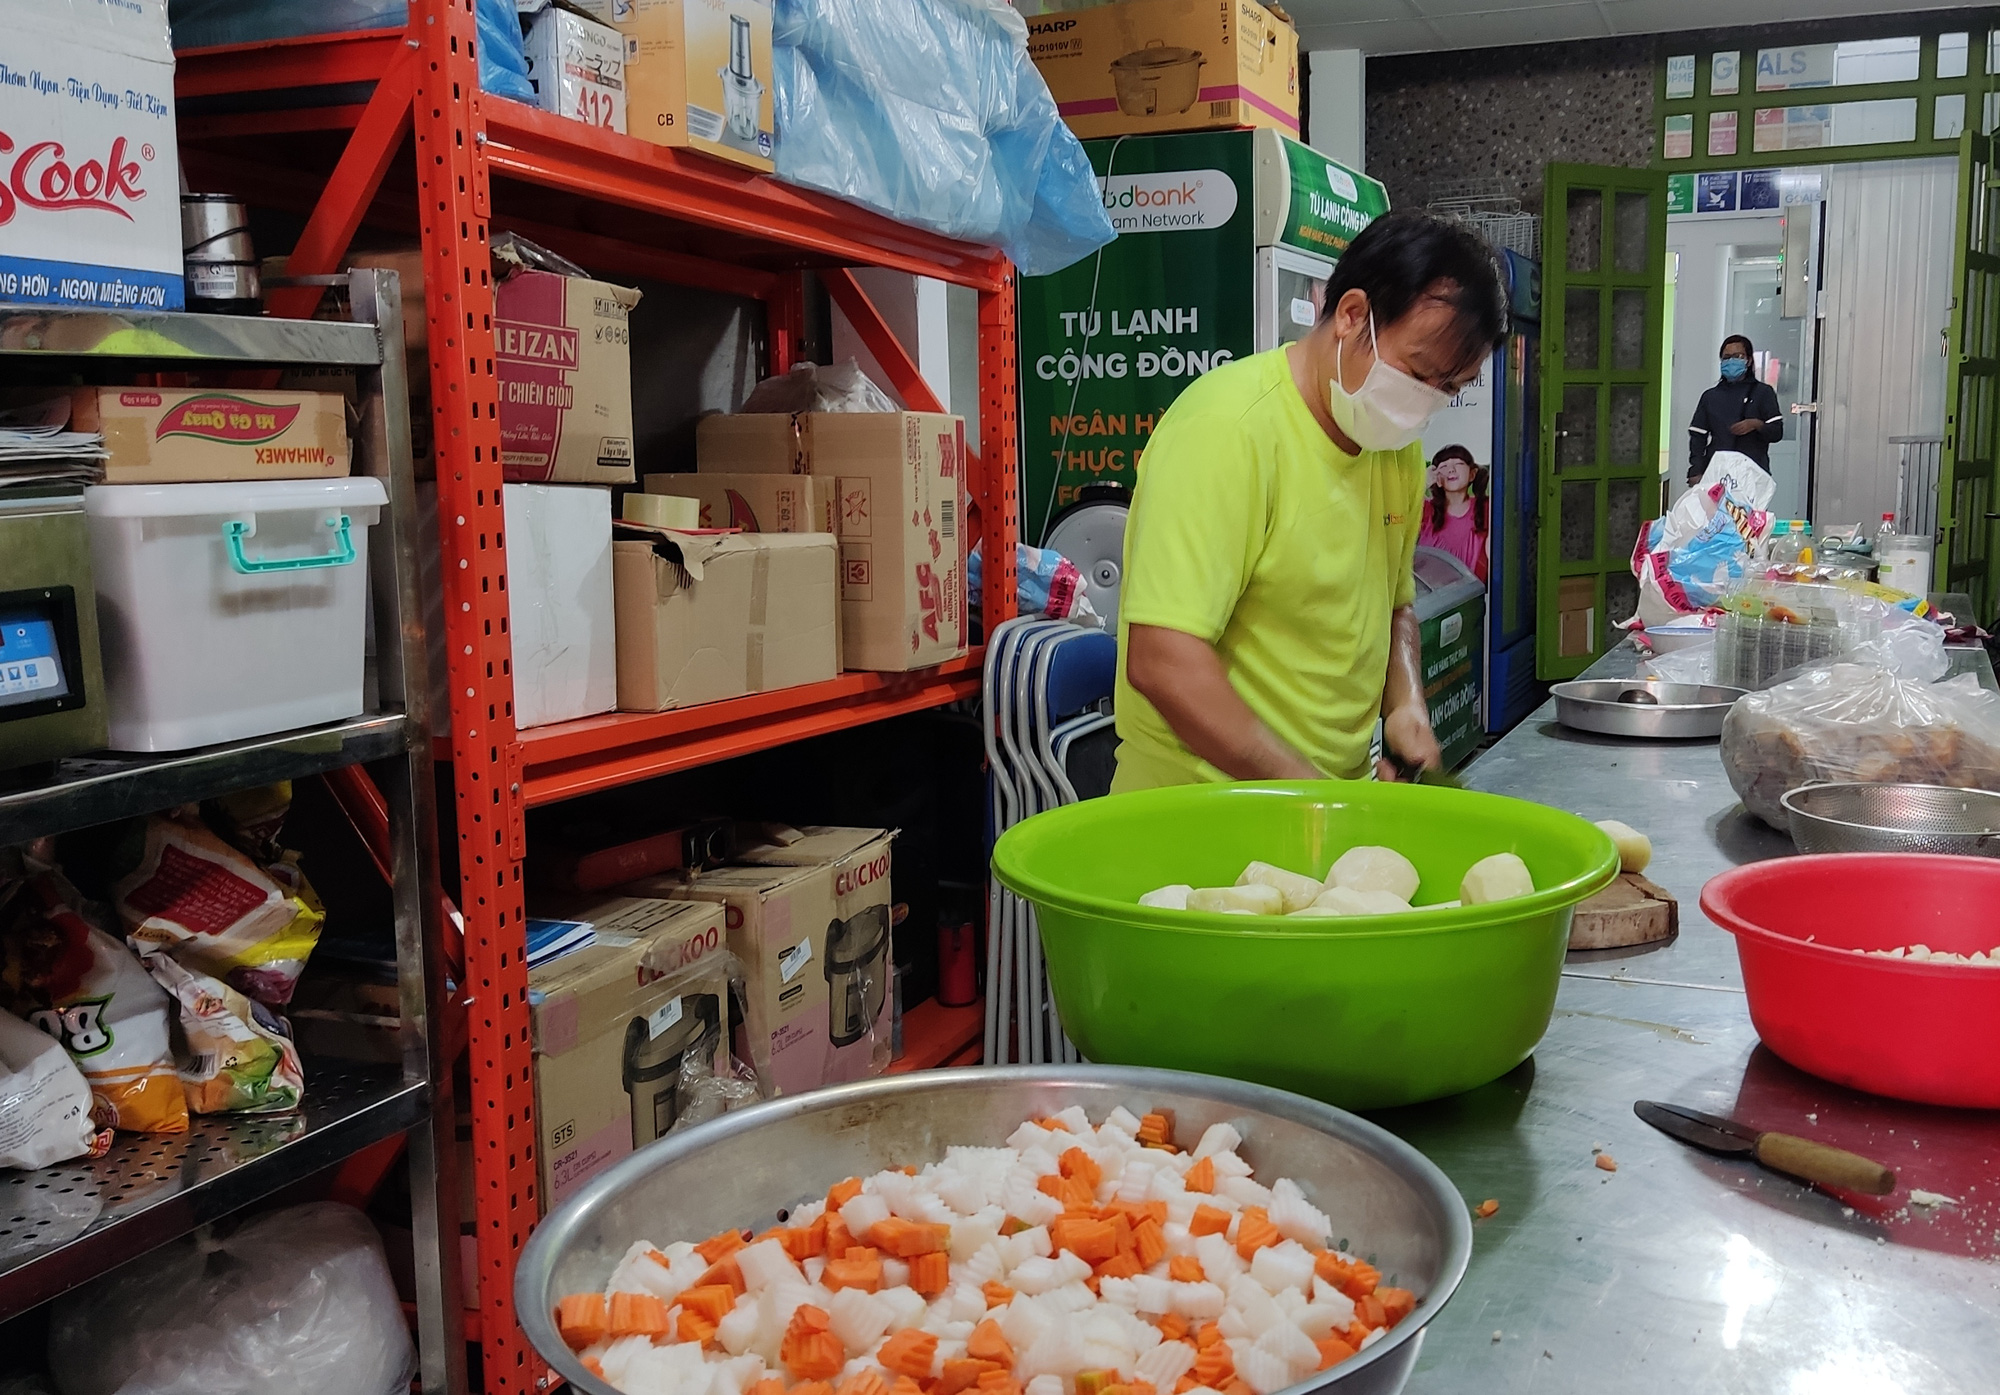 Ra mắt kho lưu trữ thực phẩm đặc biệt, lần đầu xuất hiện tại Việt Nam - Ảnh 6.